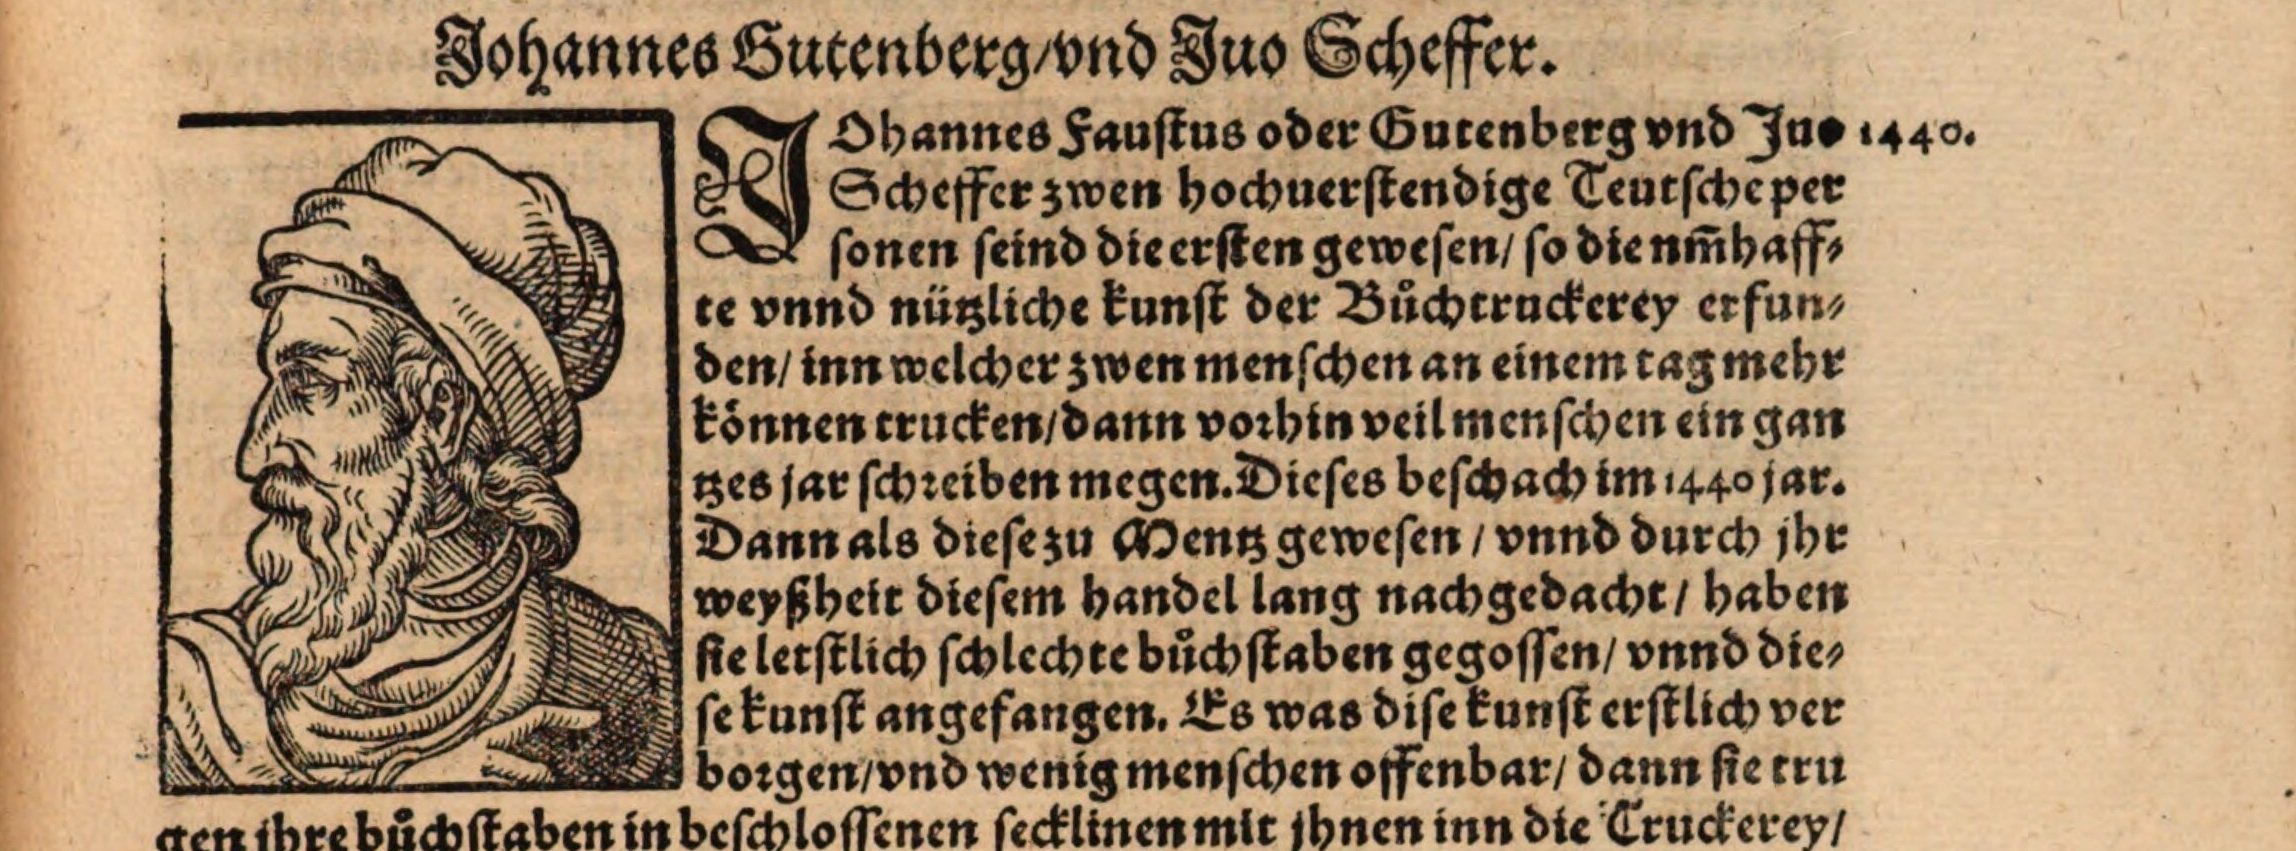 Eines der ersten Portraits von Johannes Gutenberg aus dem Jahr 1568. Niemand weiß, wie er wirklich aussah. Alle späteren Abbildungen und Statuen beziehen sich direkt oder indirekt auf die ersten beiden völlig fiktiven Platzhalter aus den Jahren 1565 und 1568.